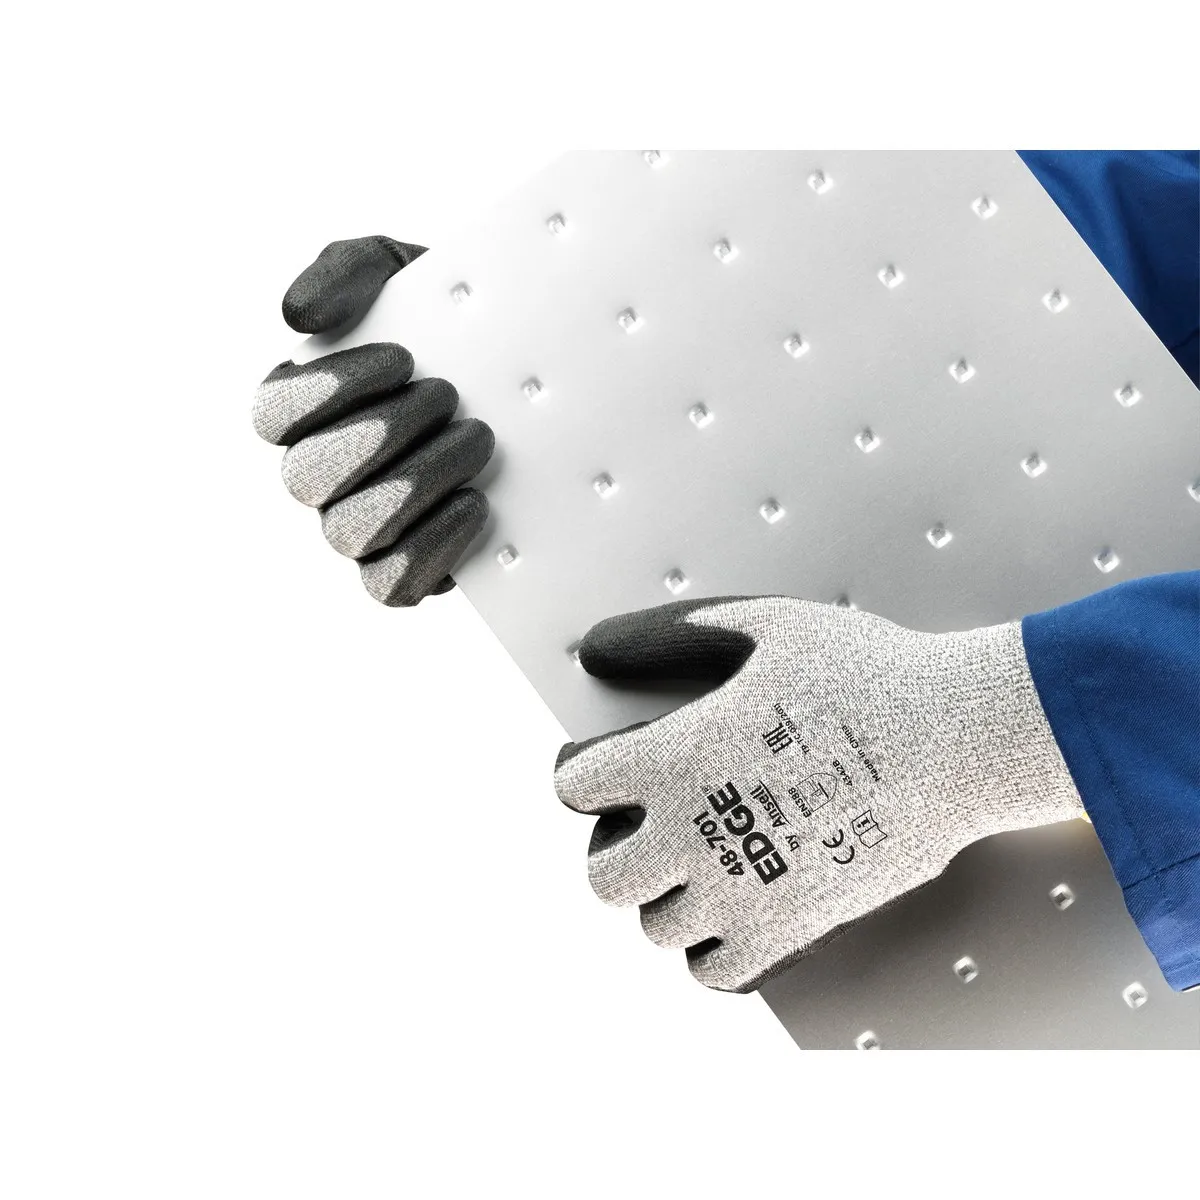 Zaštitne rukavice EDGE 48-701 sivo-crne - Ansell - PAR 